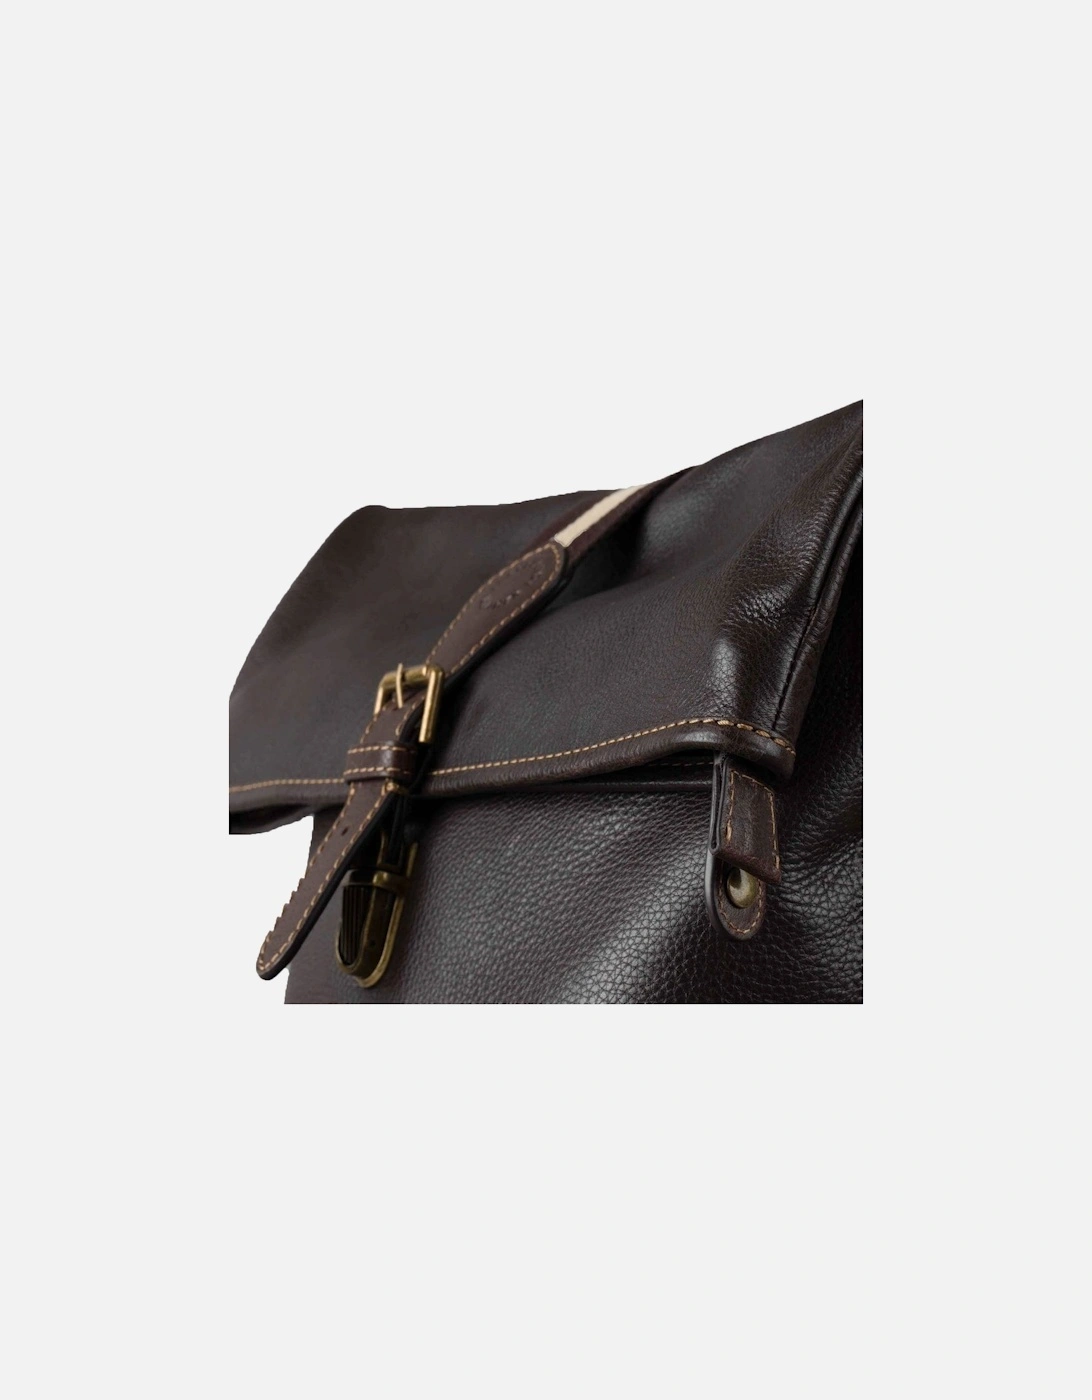 Kelsick Leather Rolltop Backpack